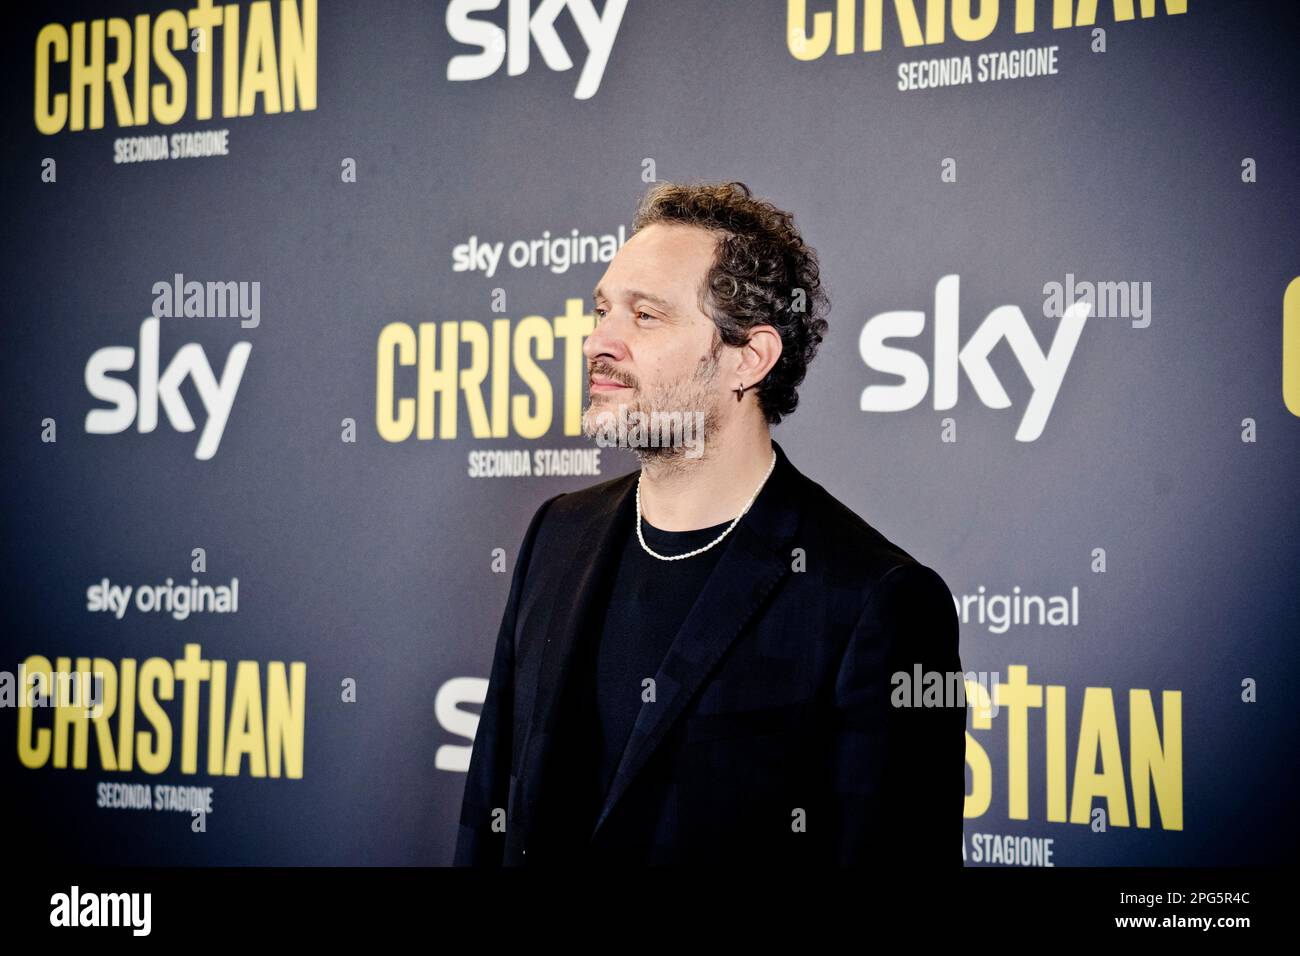 Rome, Italy, 20th March 2023, Claudio Santamaria attends the premiere of 'Christian - seconda stagione' at Cinema Barberini (Photo credits: Giovanna O Stock Photo